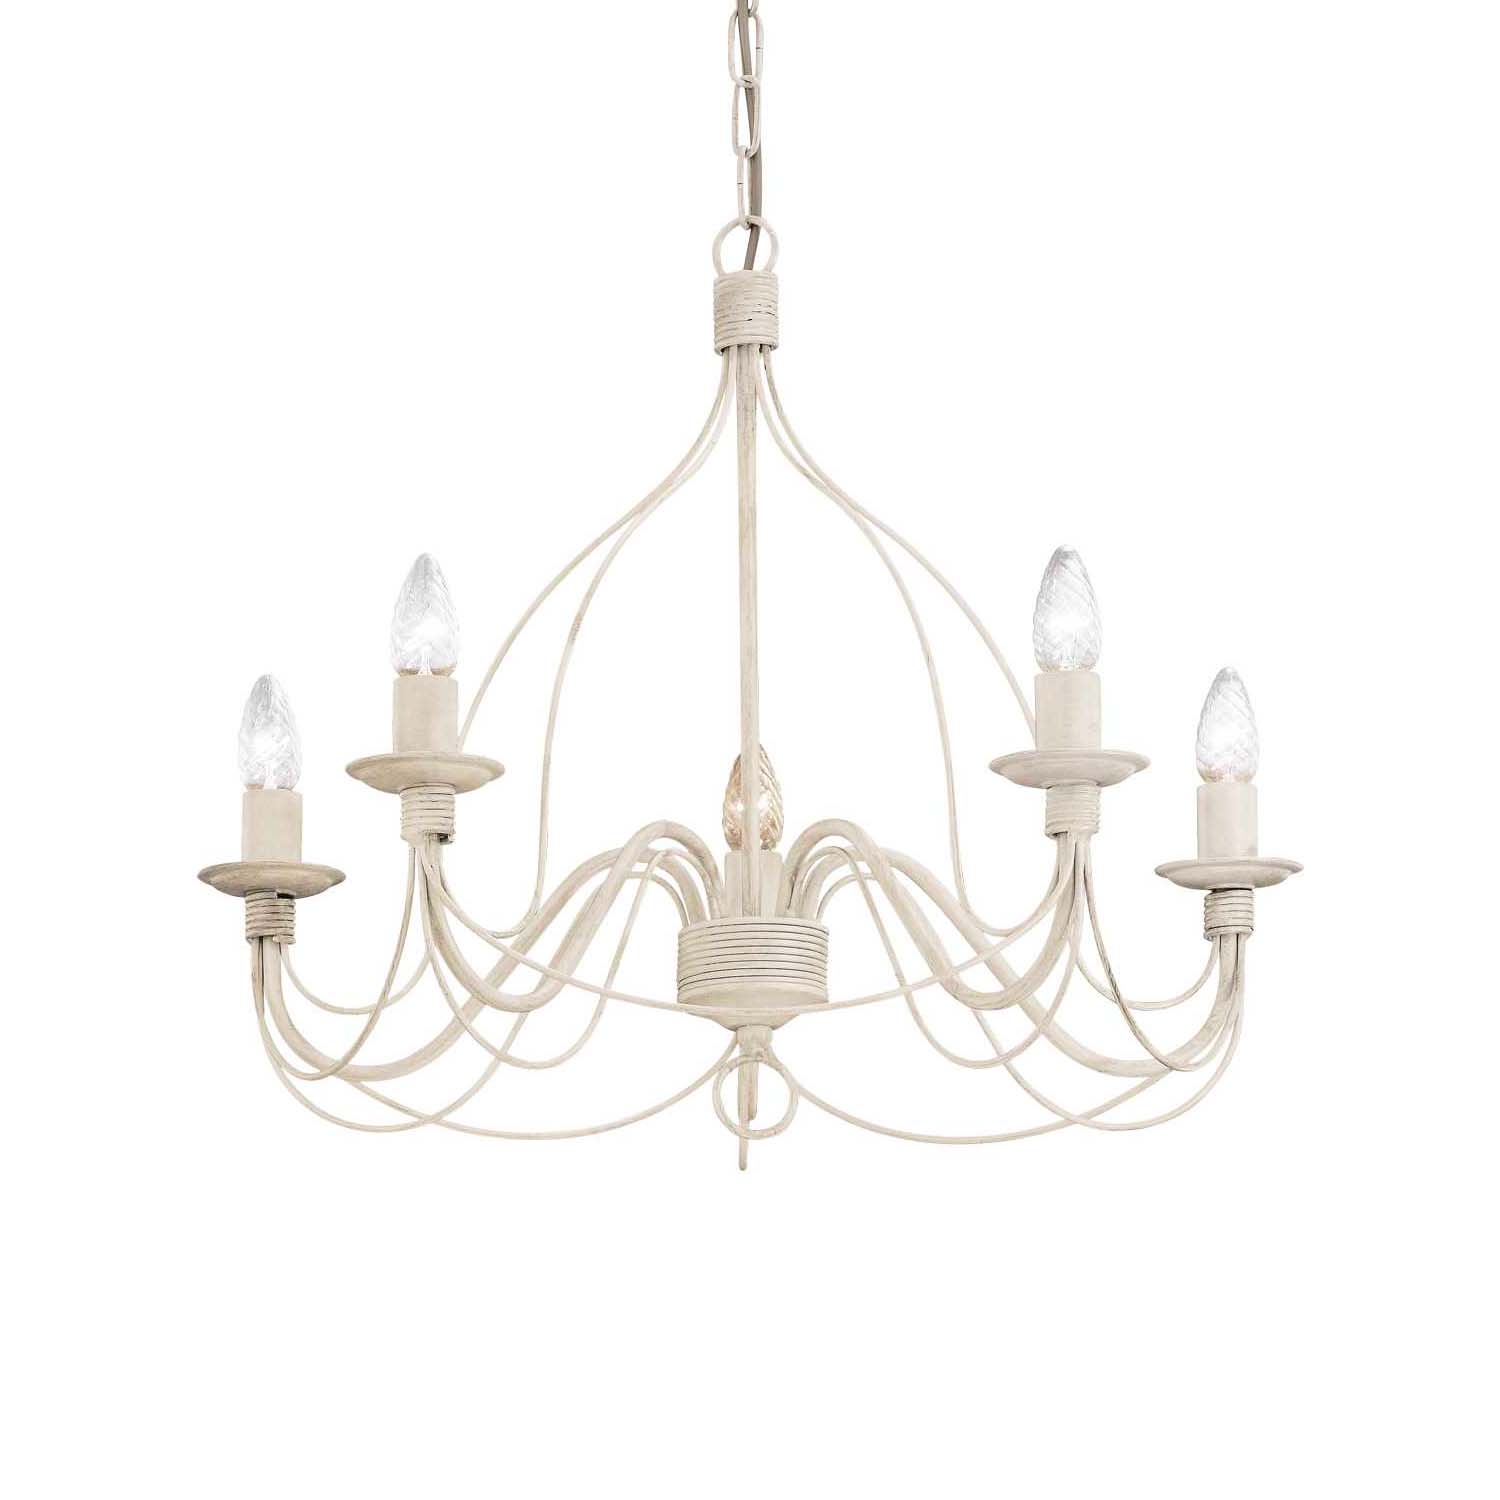 CORTE - White shabby chic chandelier